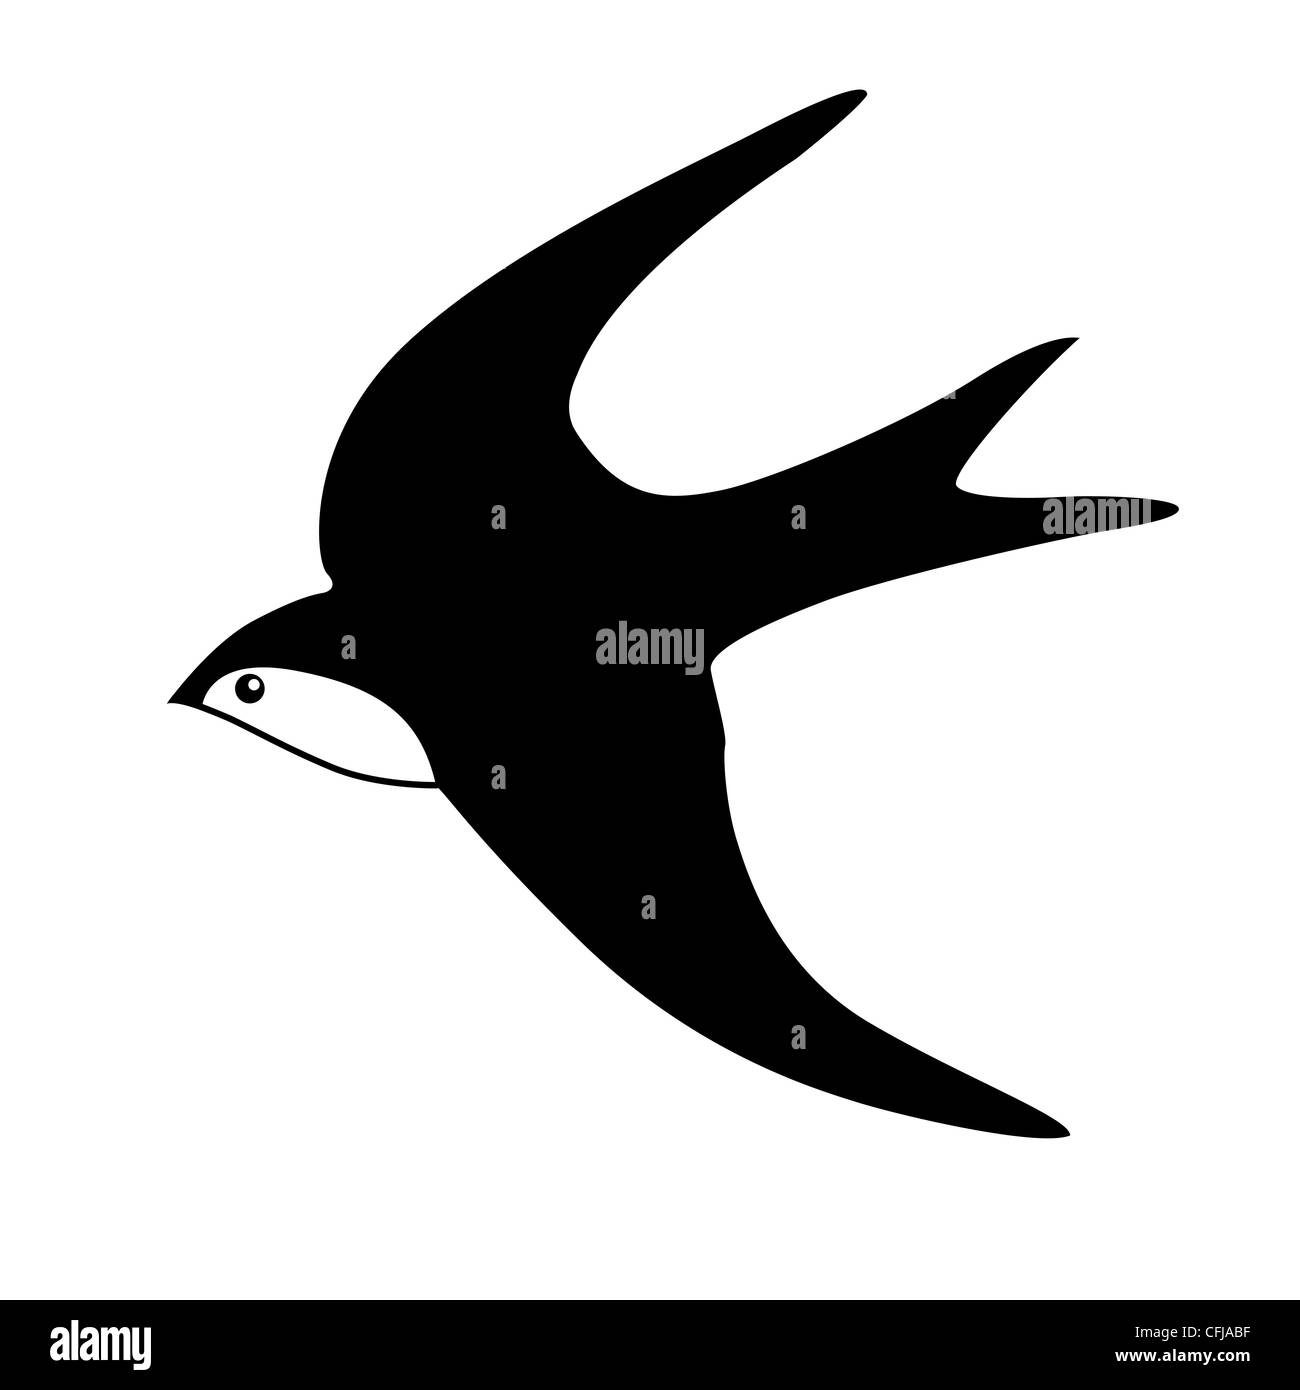 Vektor-Silhouette der Schwalbe auf weißem Hintergrund Stockfotografie -  Alamy